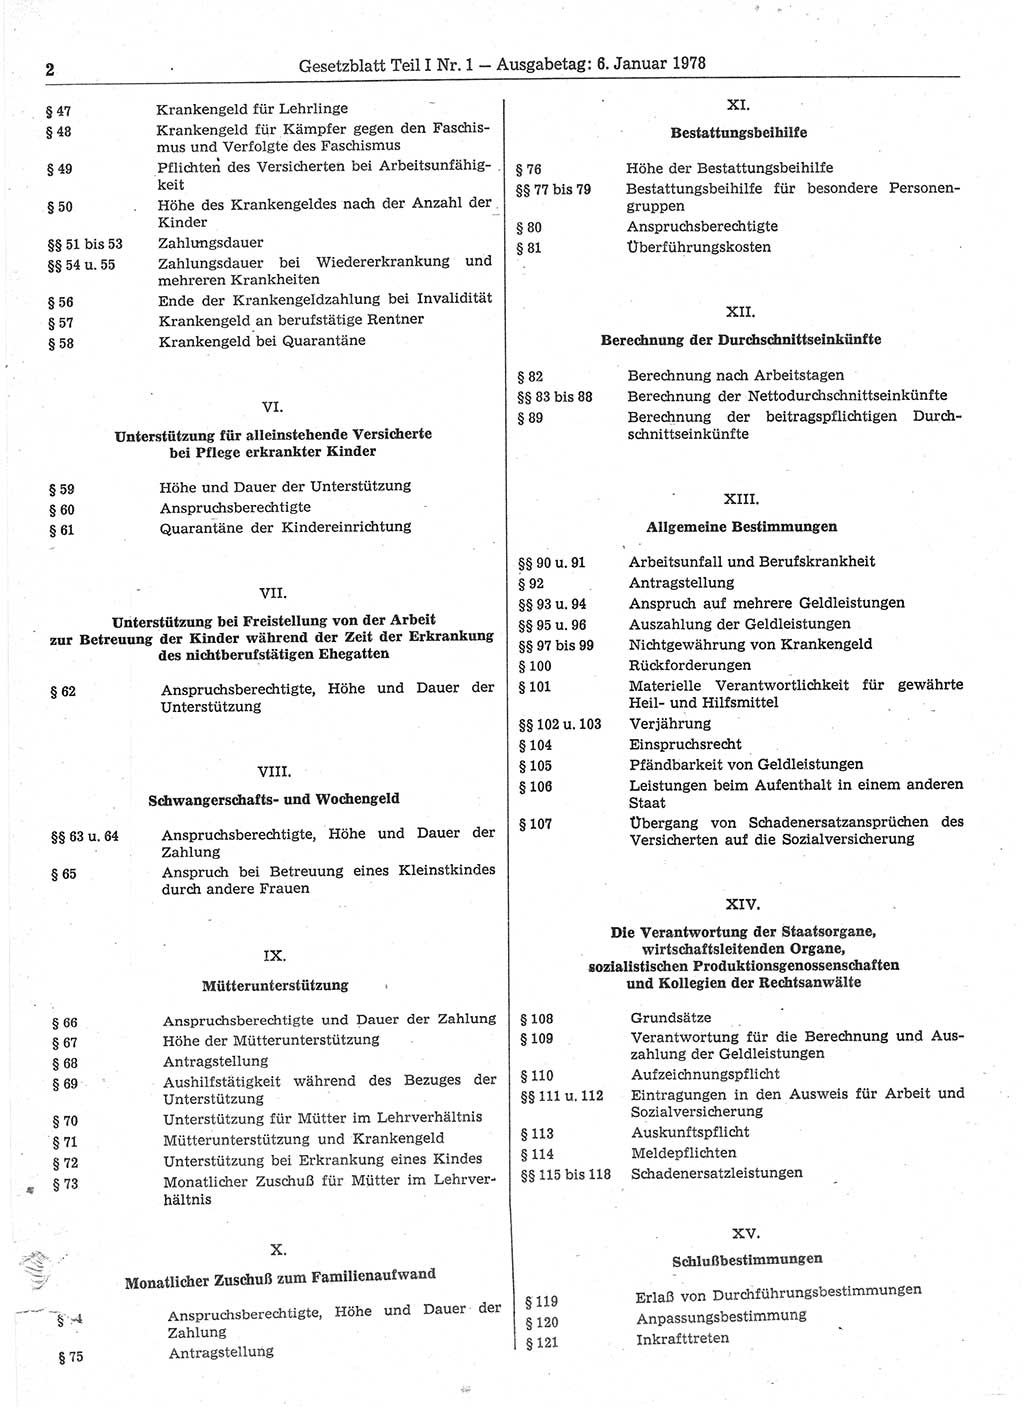 Gesetzblatt (GBl.) der Deutschen Demokratischen Republik (DDR) Teil Ⅰ 1978, Seite 2 (GBl. DDR Ⅰ 1978, S. 2)